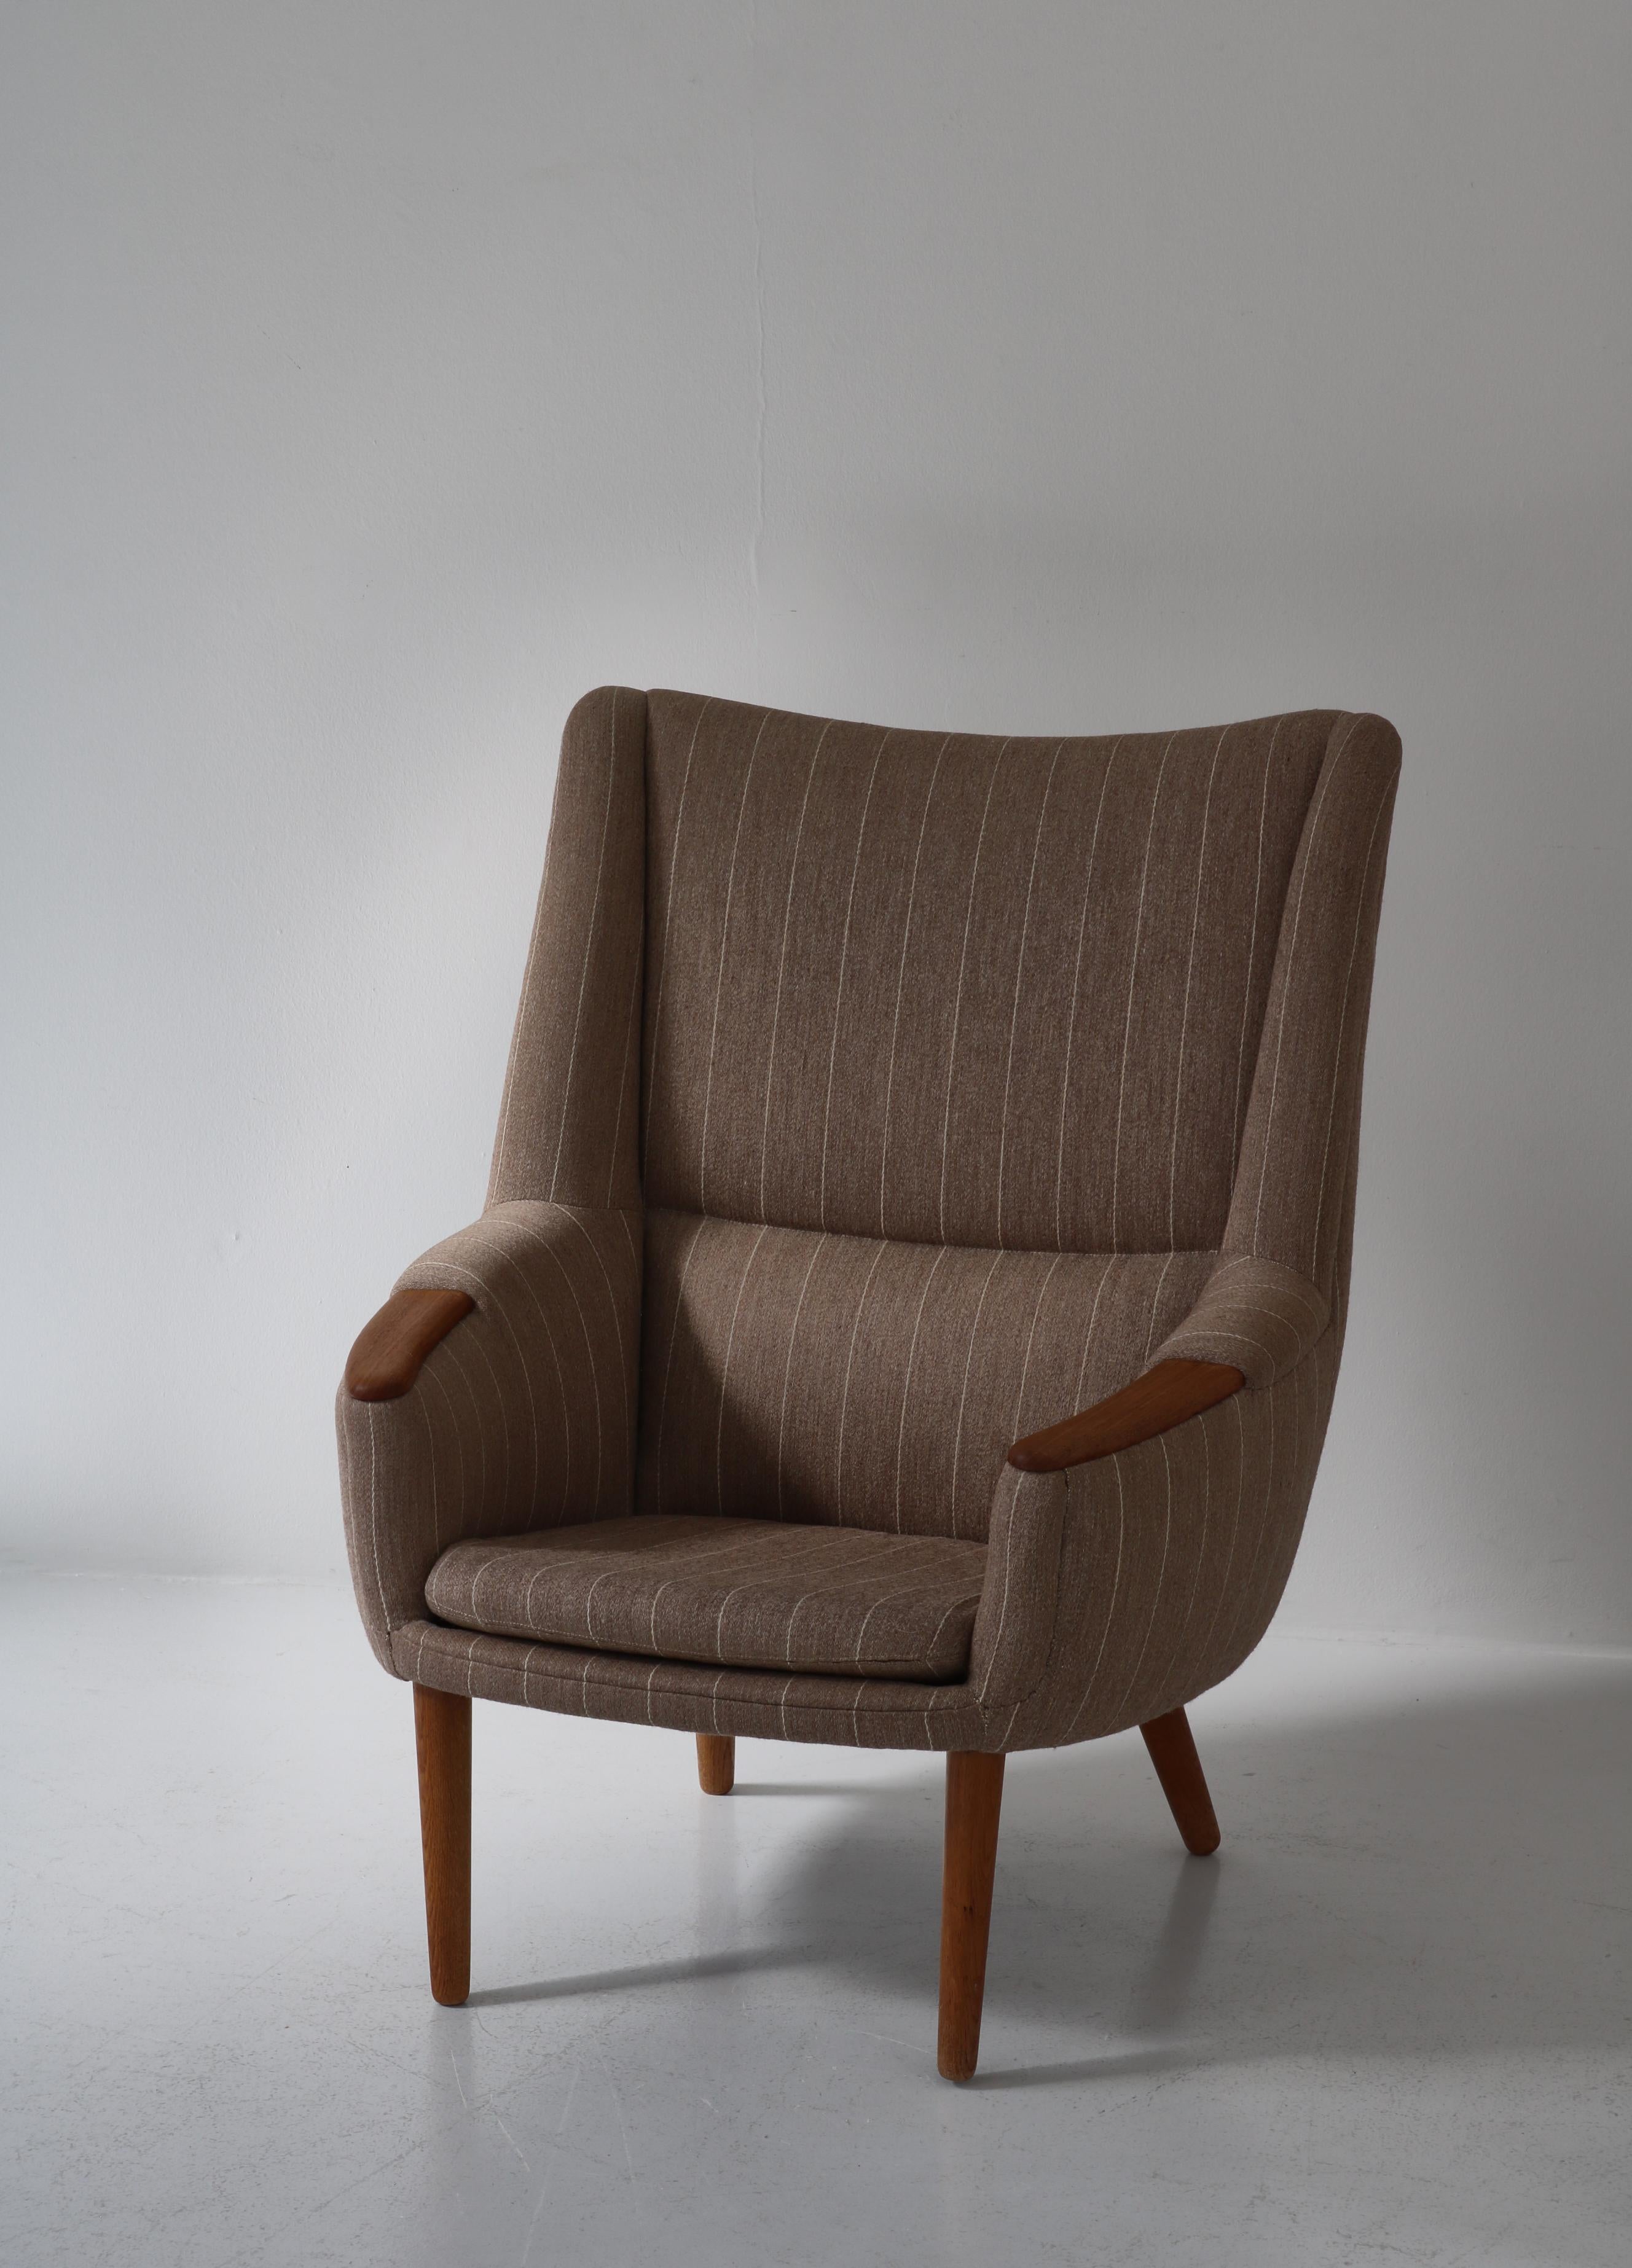 Magnifique chaise longue vintage à dossier haut de 1958 du designer danois Kurt Østervig. La chaise est connue sous le nom de 